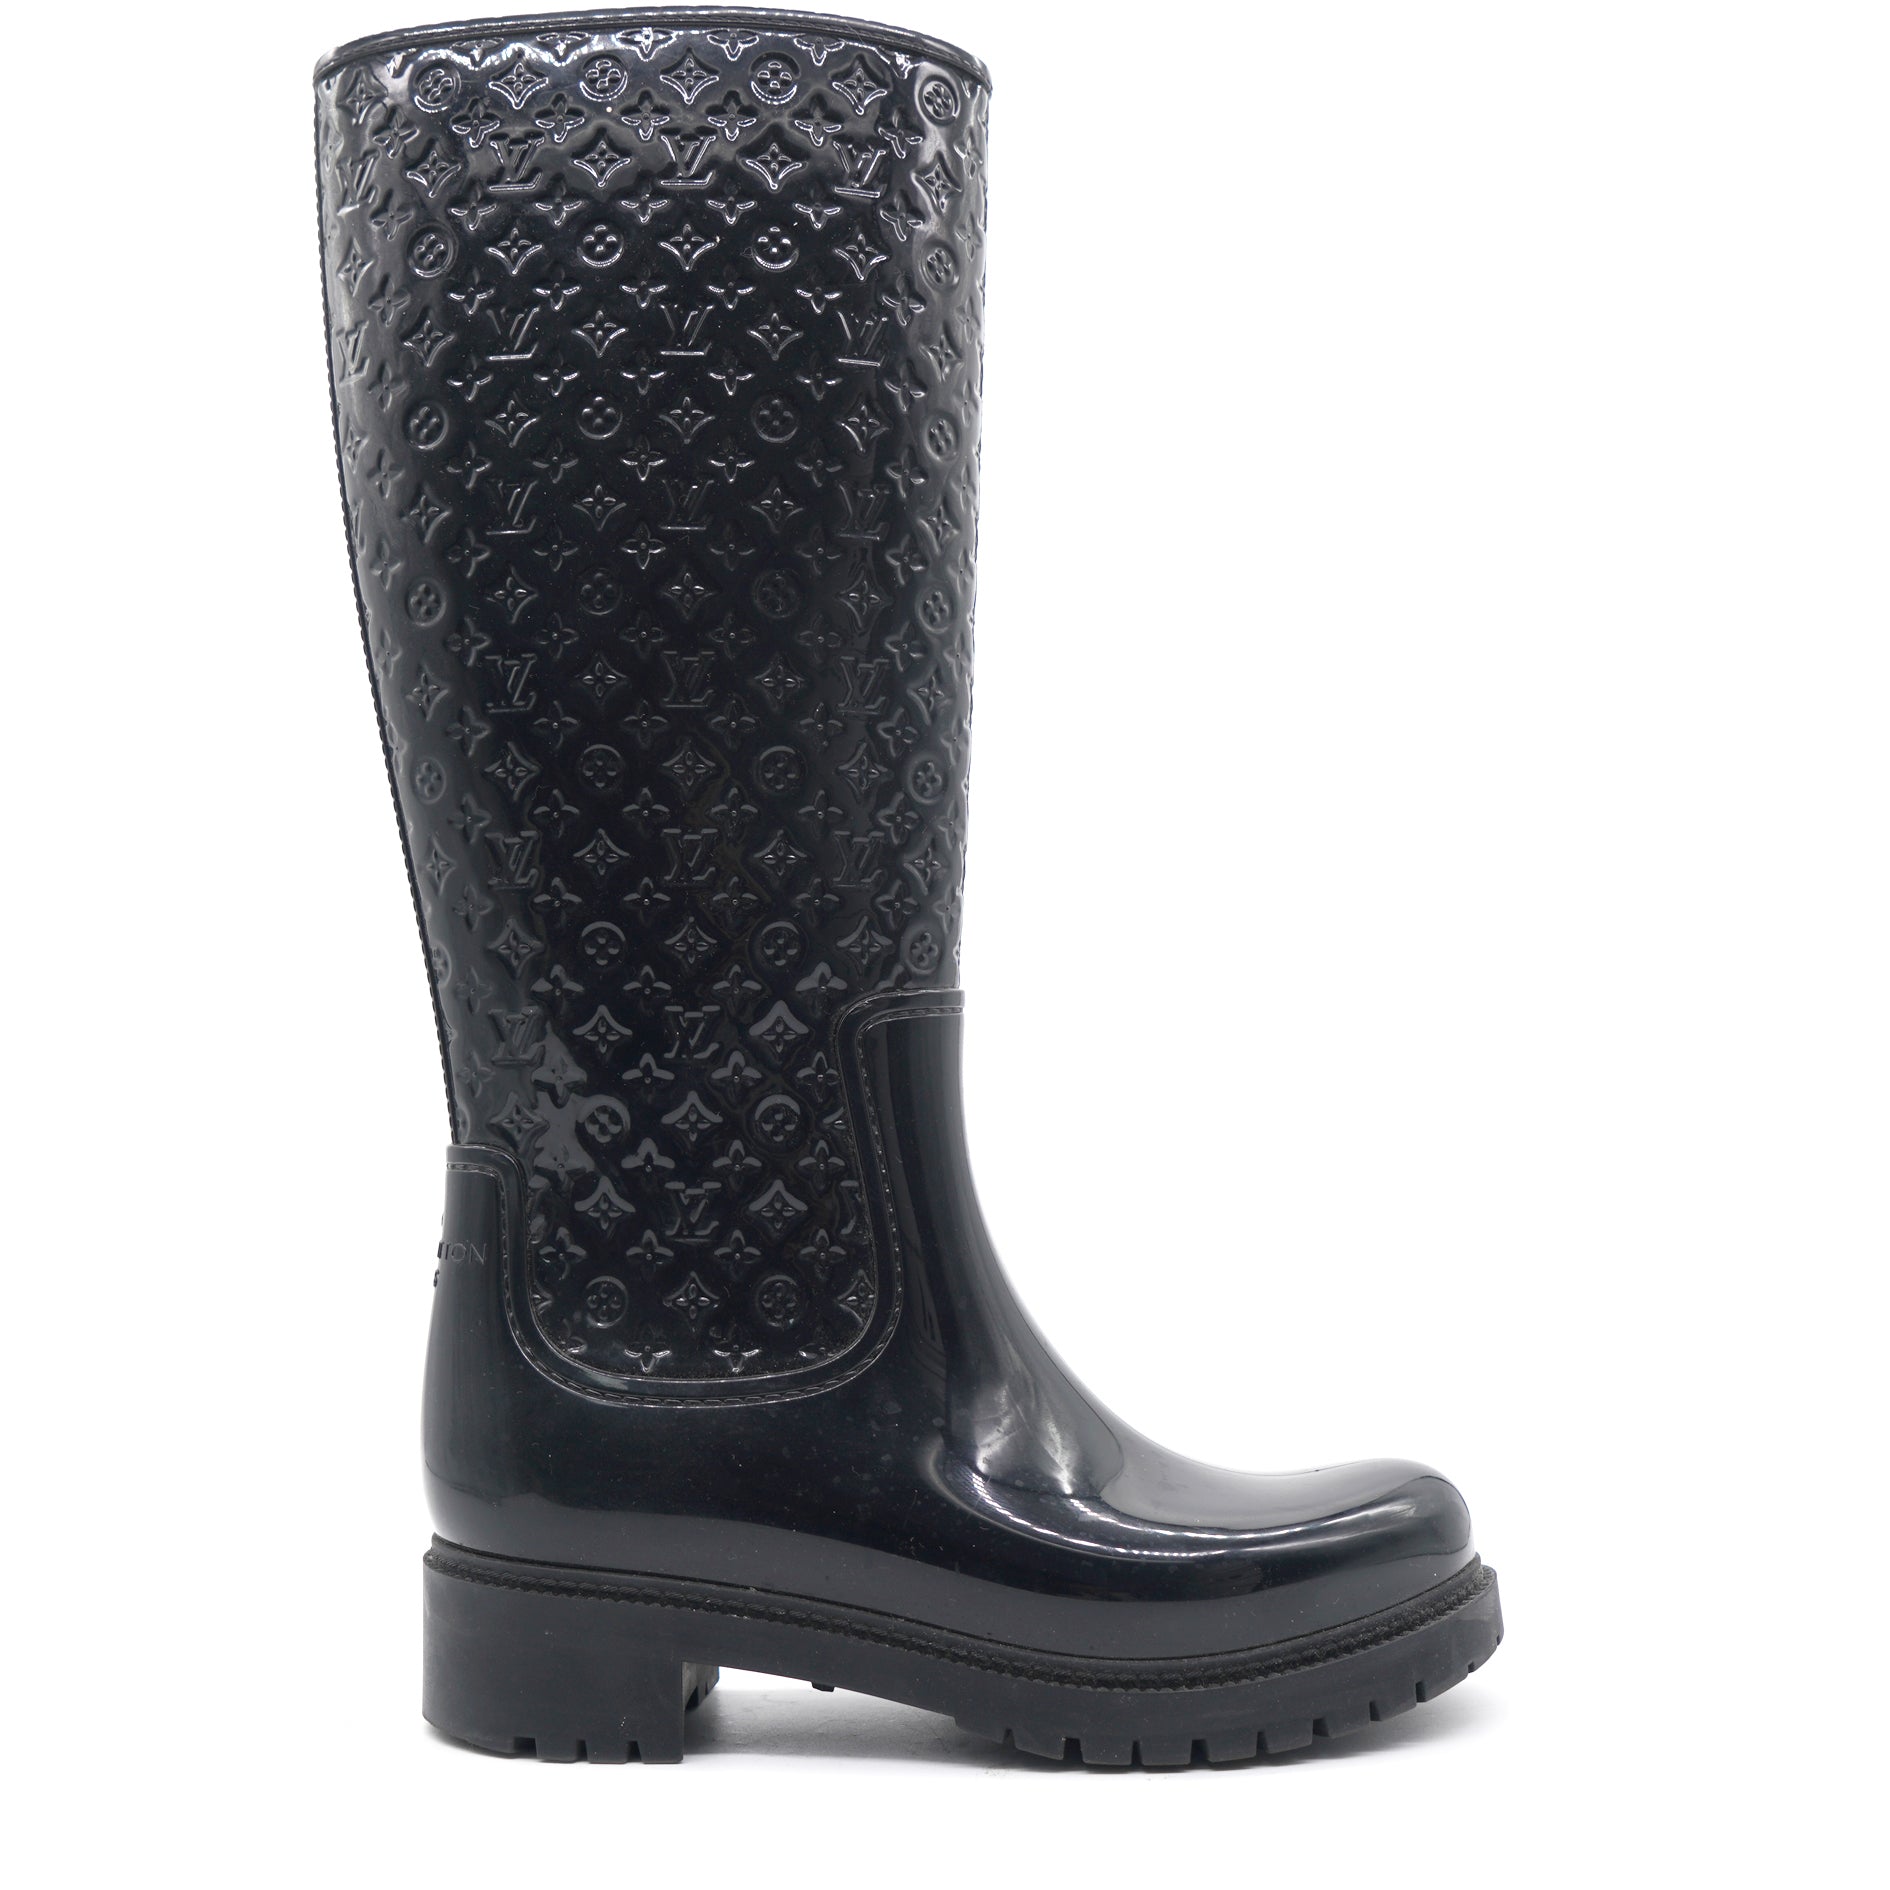 Drops wellington boots Louis Vuitton Black size 38 EU in Rubber - 33412064